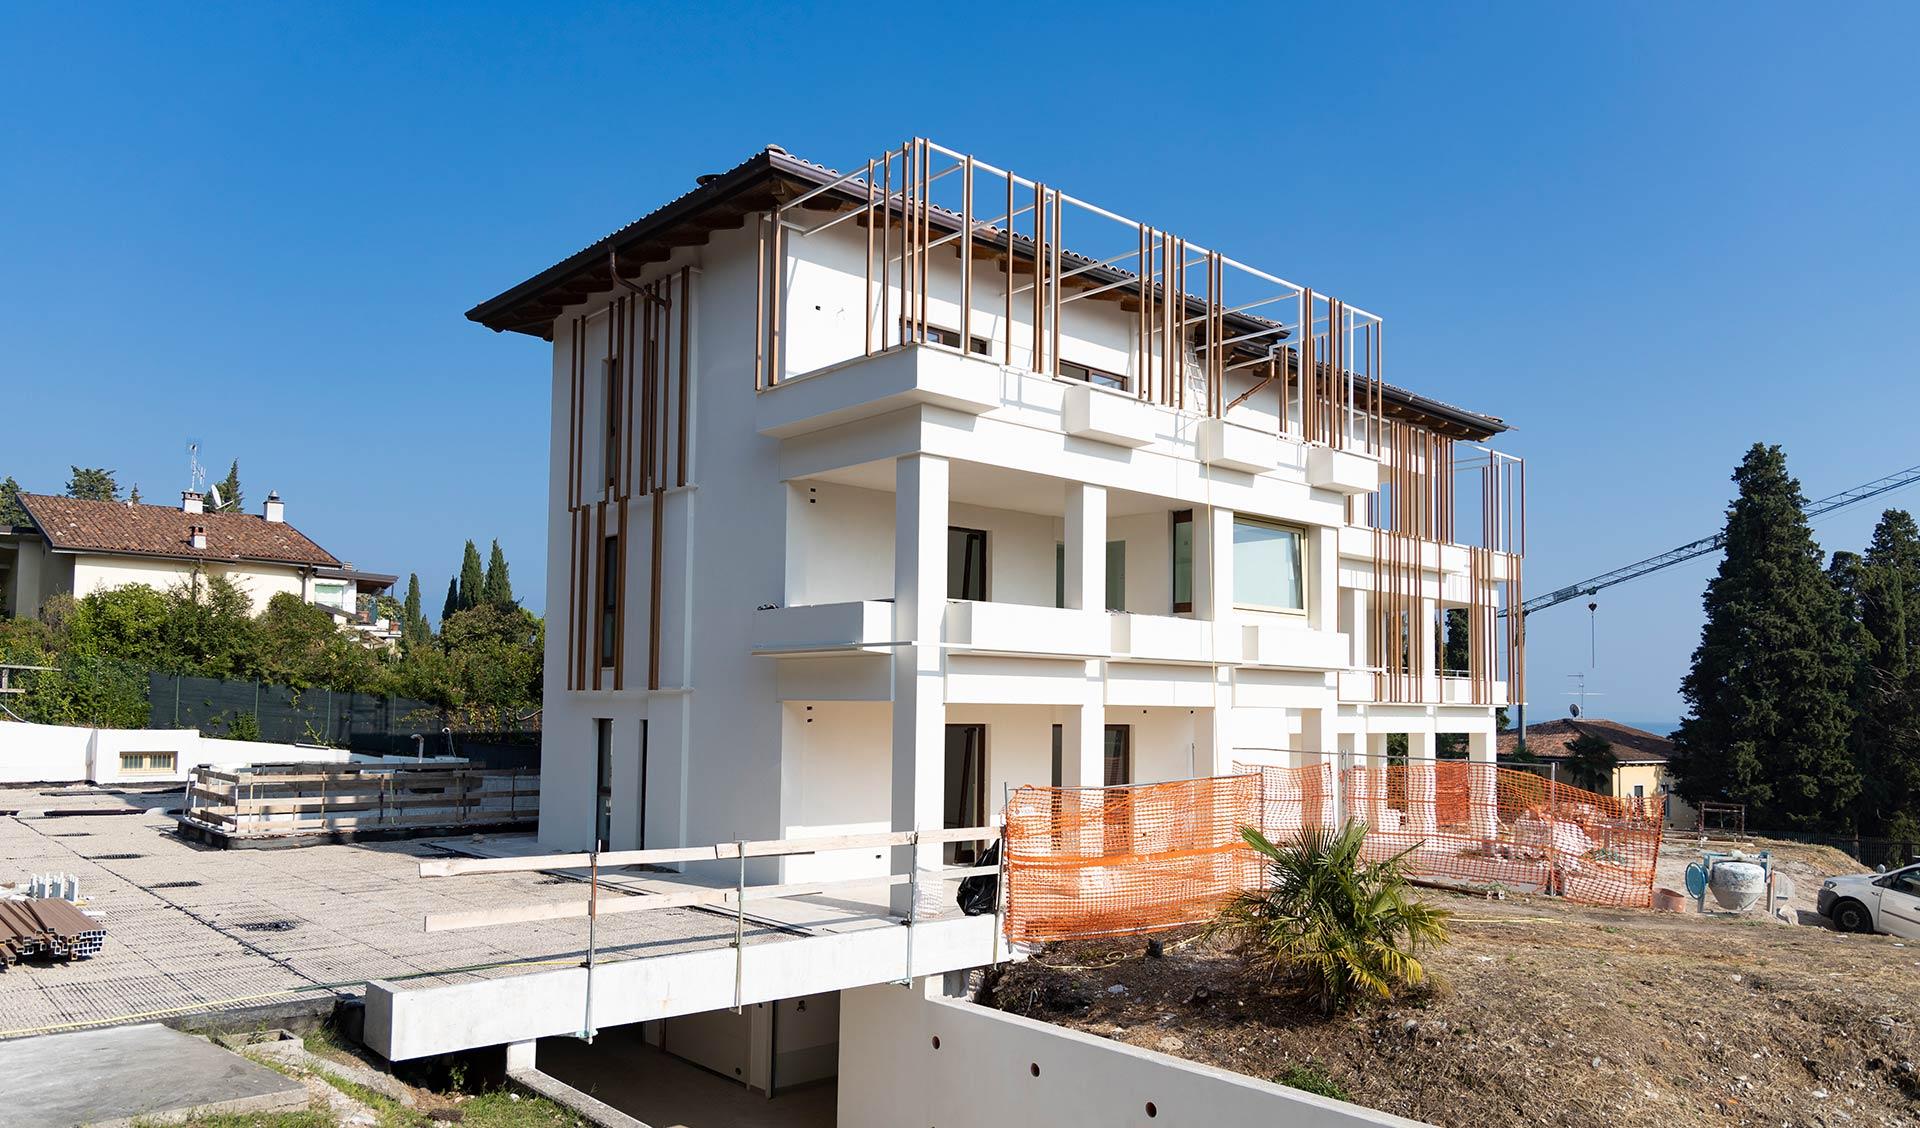 Building complex Gardone Riviera